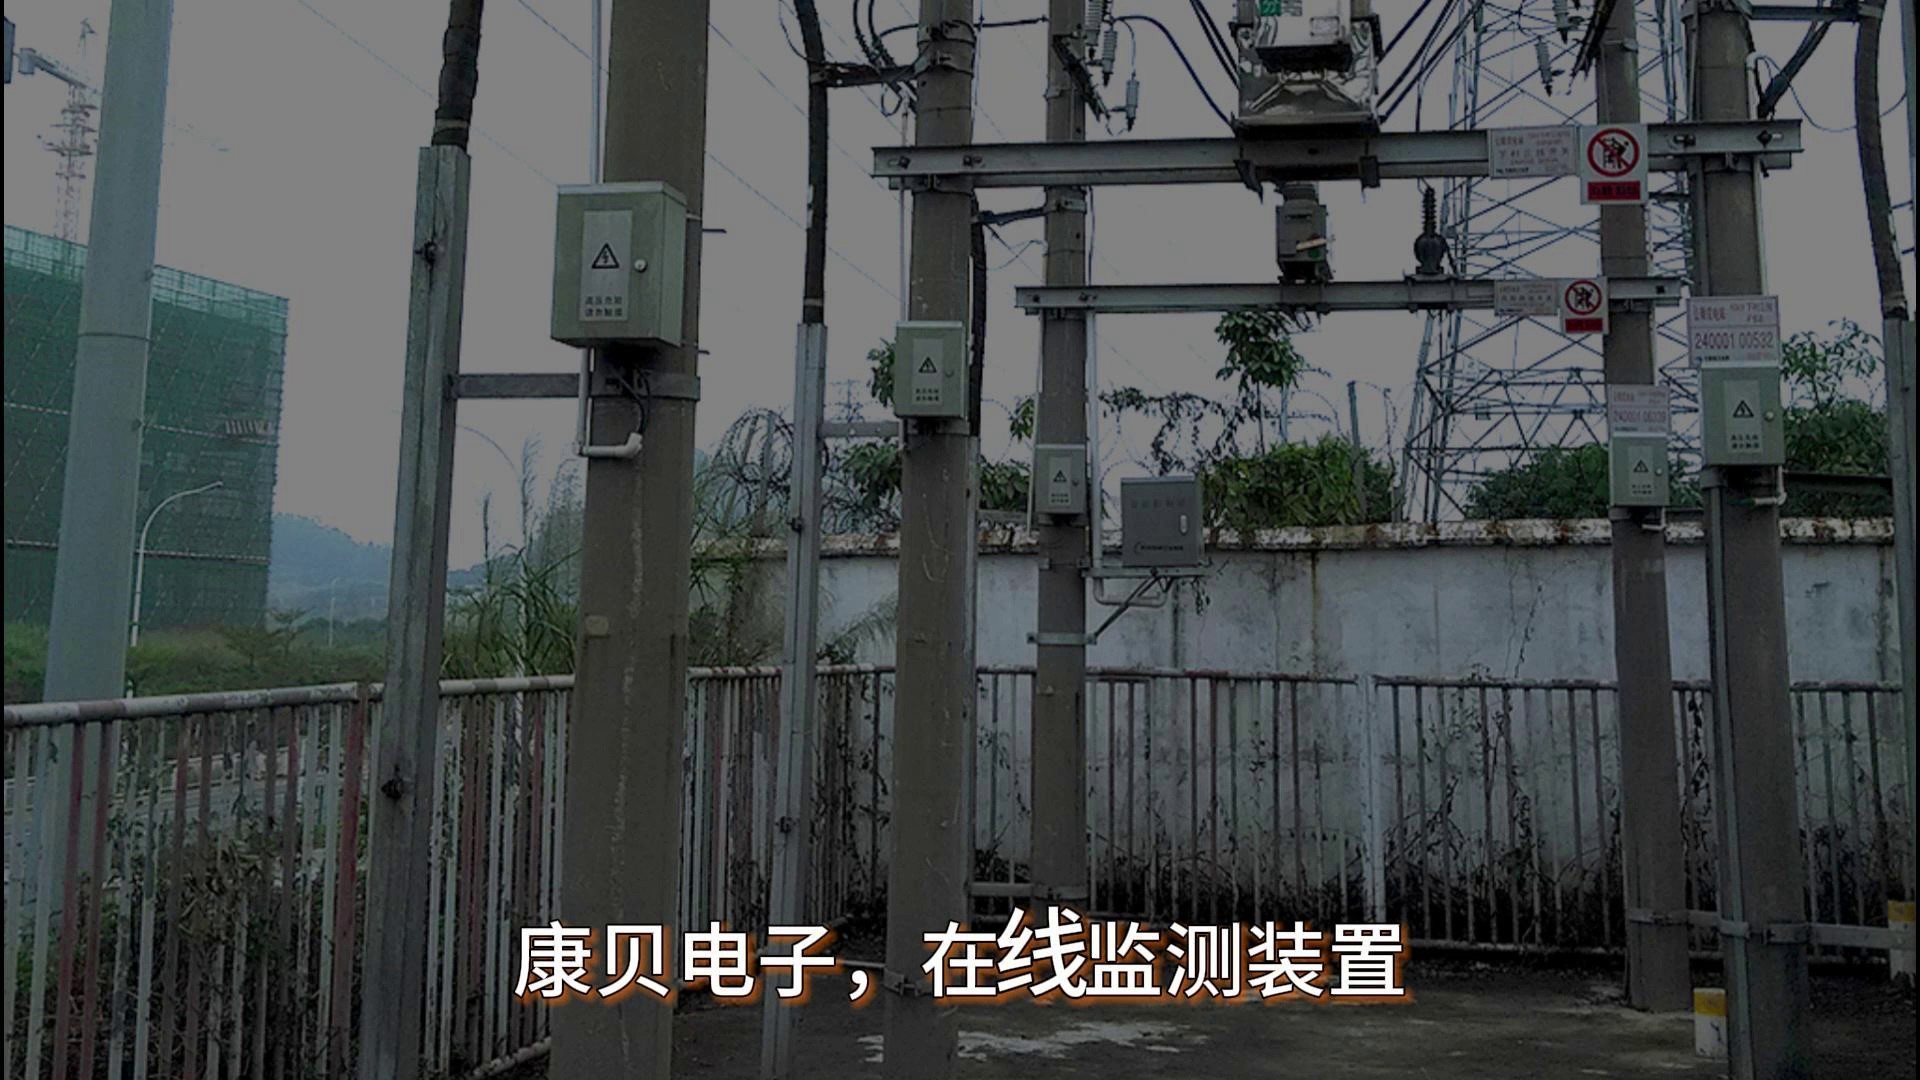 惠州视频在线监测装置一般多少钱,在线监测装置